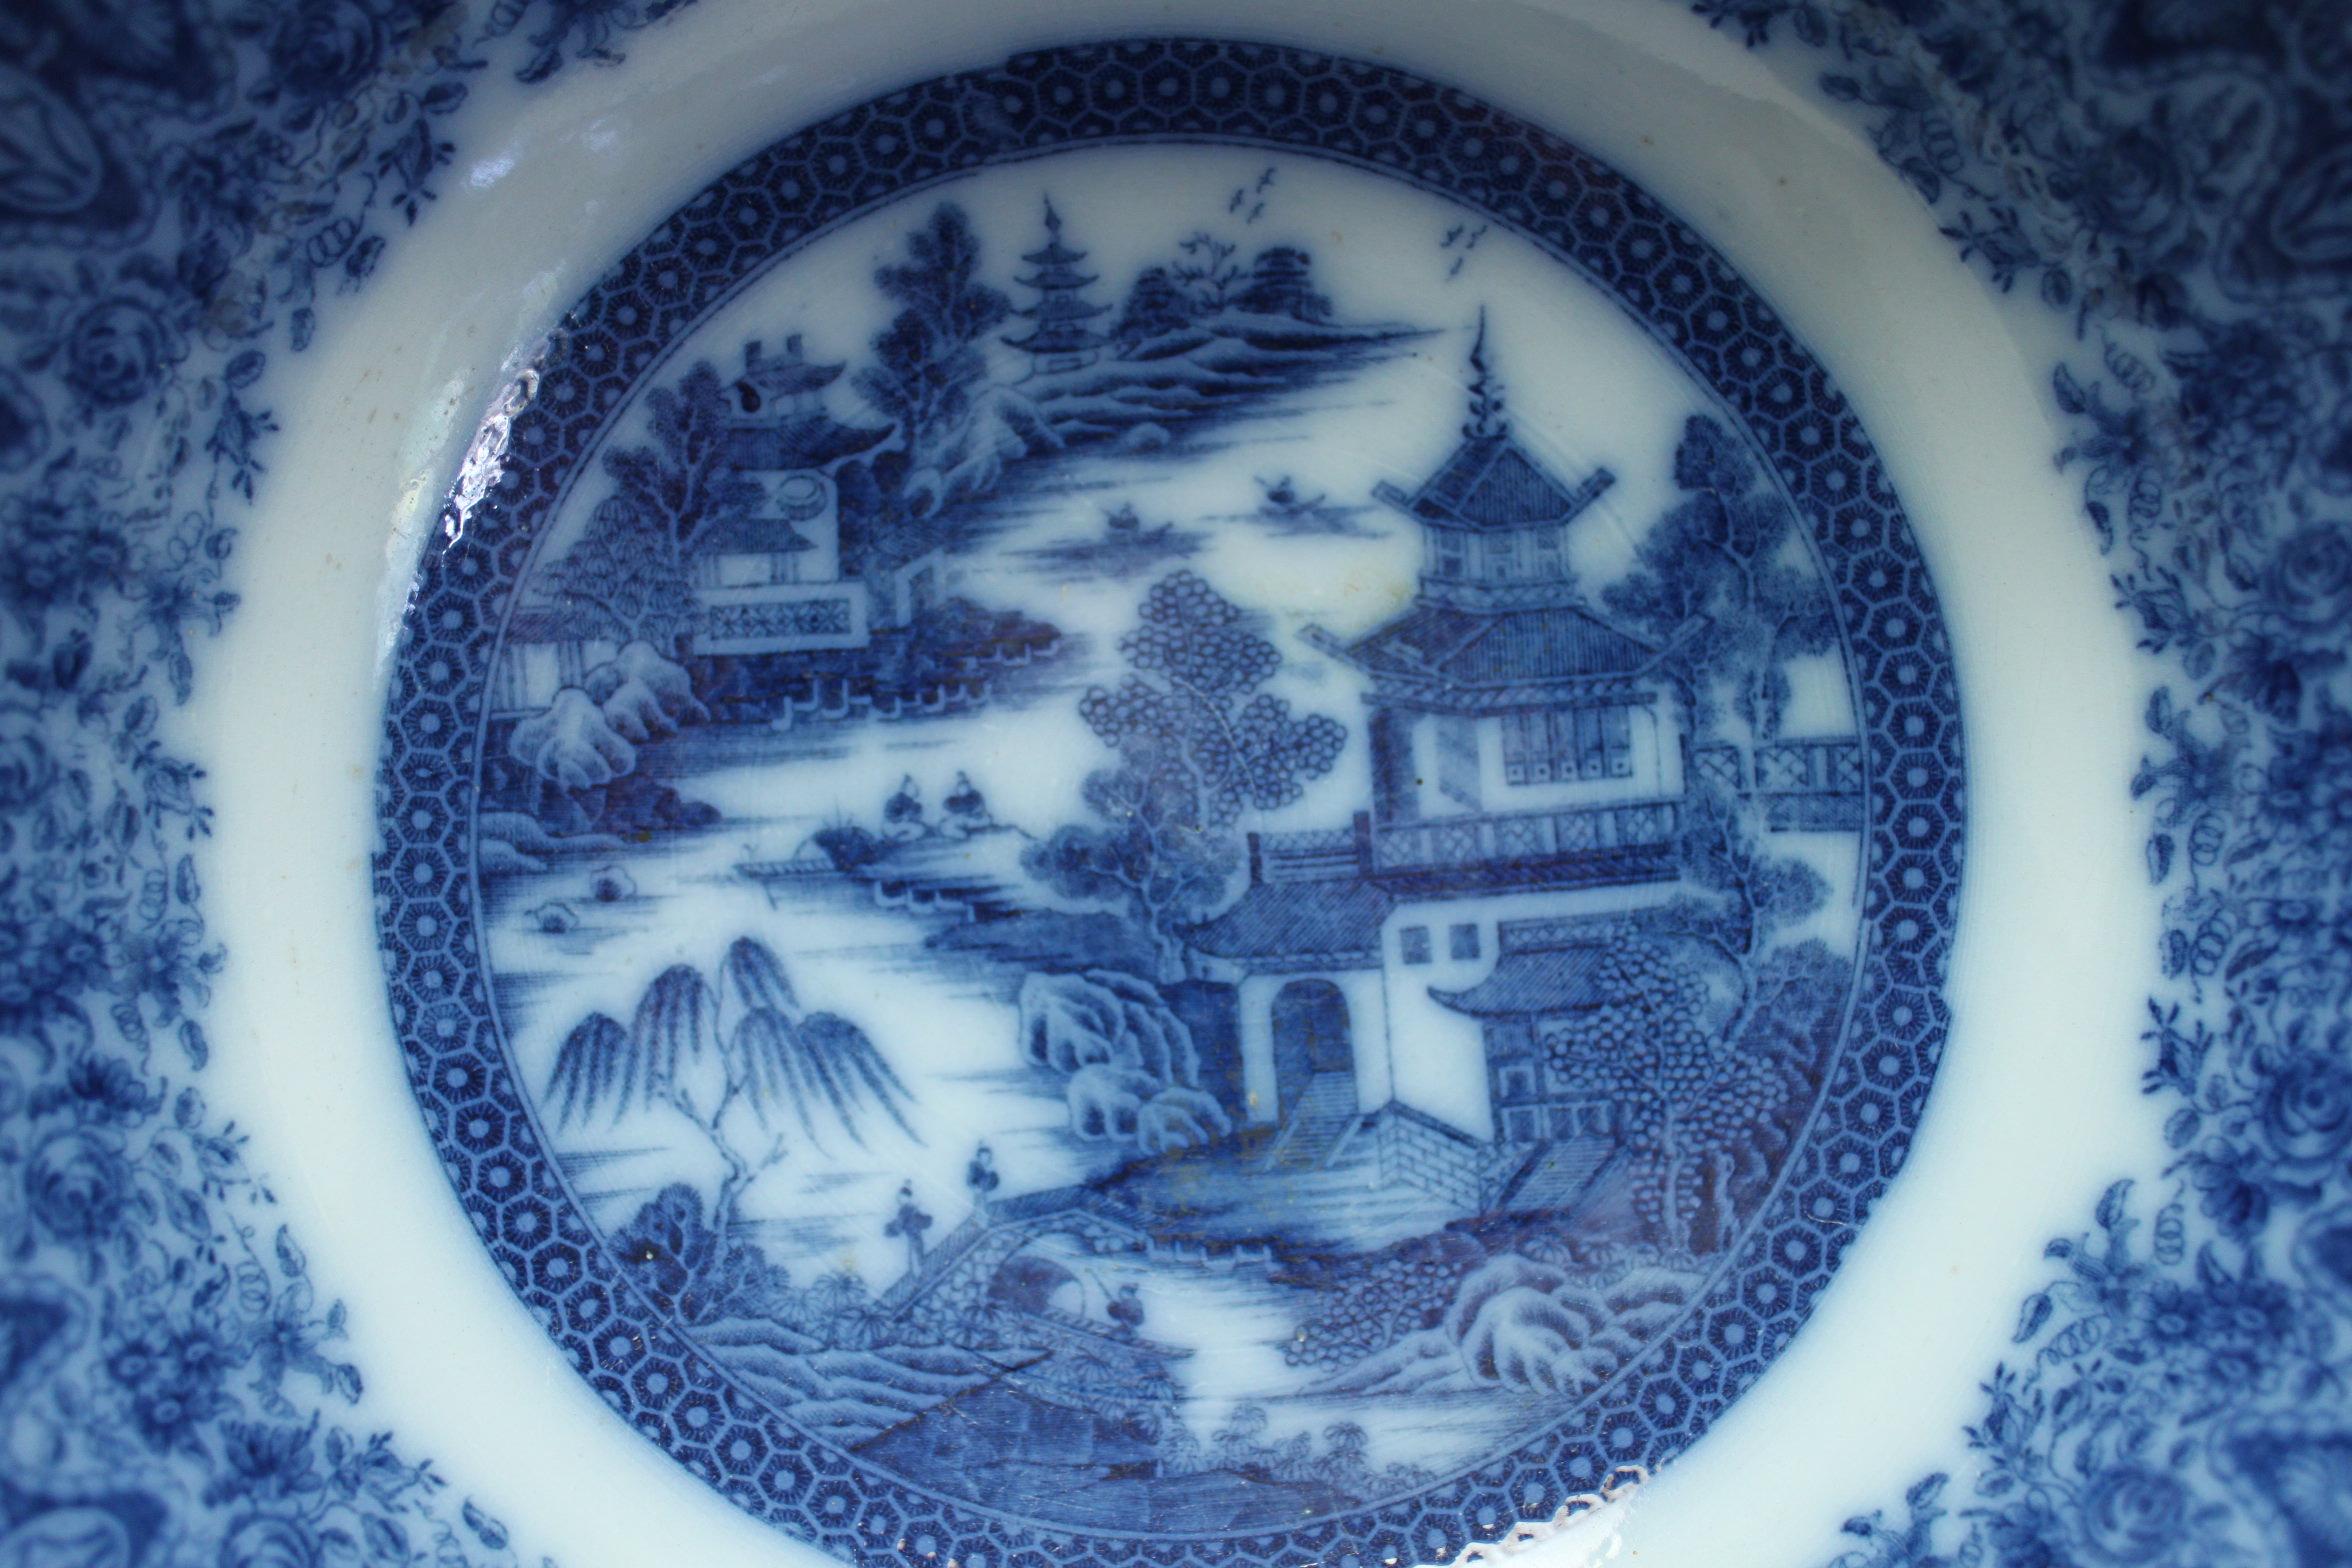 Décoré d'un motif de chinoiserie bleu et blanc sous glaçure, ce bol à punch en faïence a été attribué à la manufacture Herculaneum de Liverpool. La bordure inhabituelle et étonnamment profonde est imprimée à l'intérieur et à l'extérieur et mesure